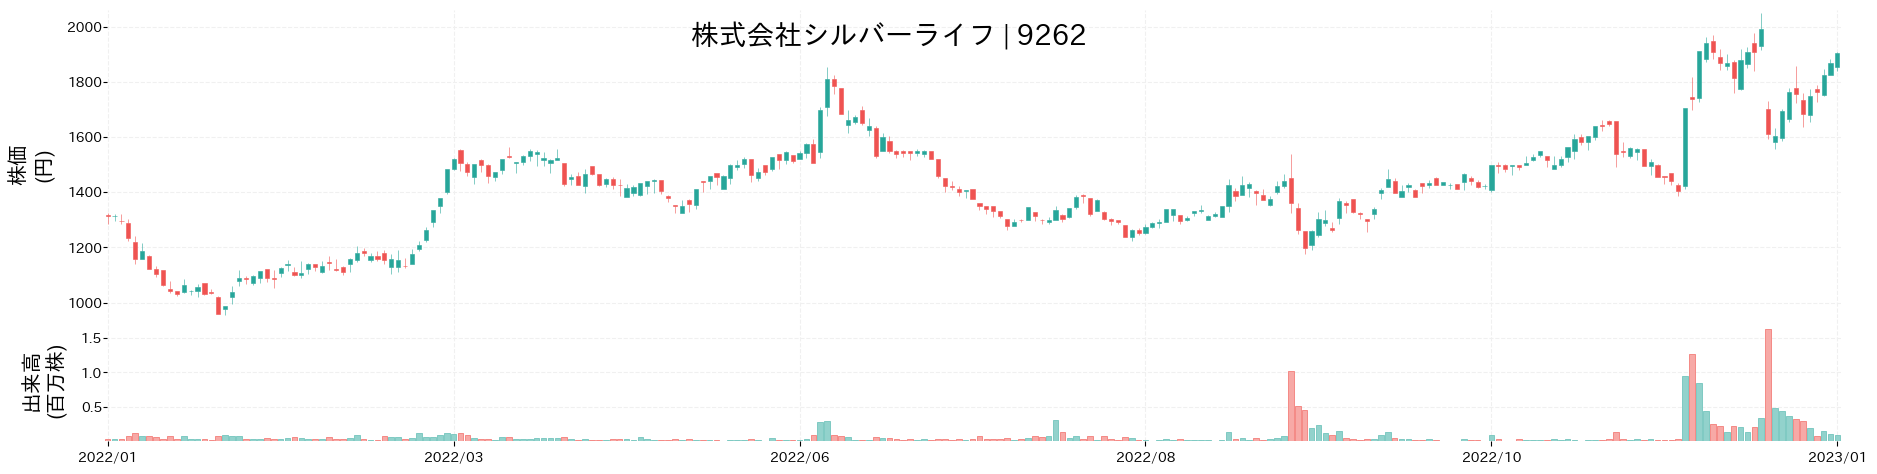 シルバーライフの株価推移(2022)